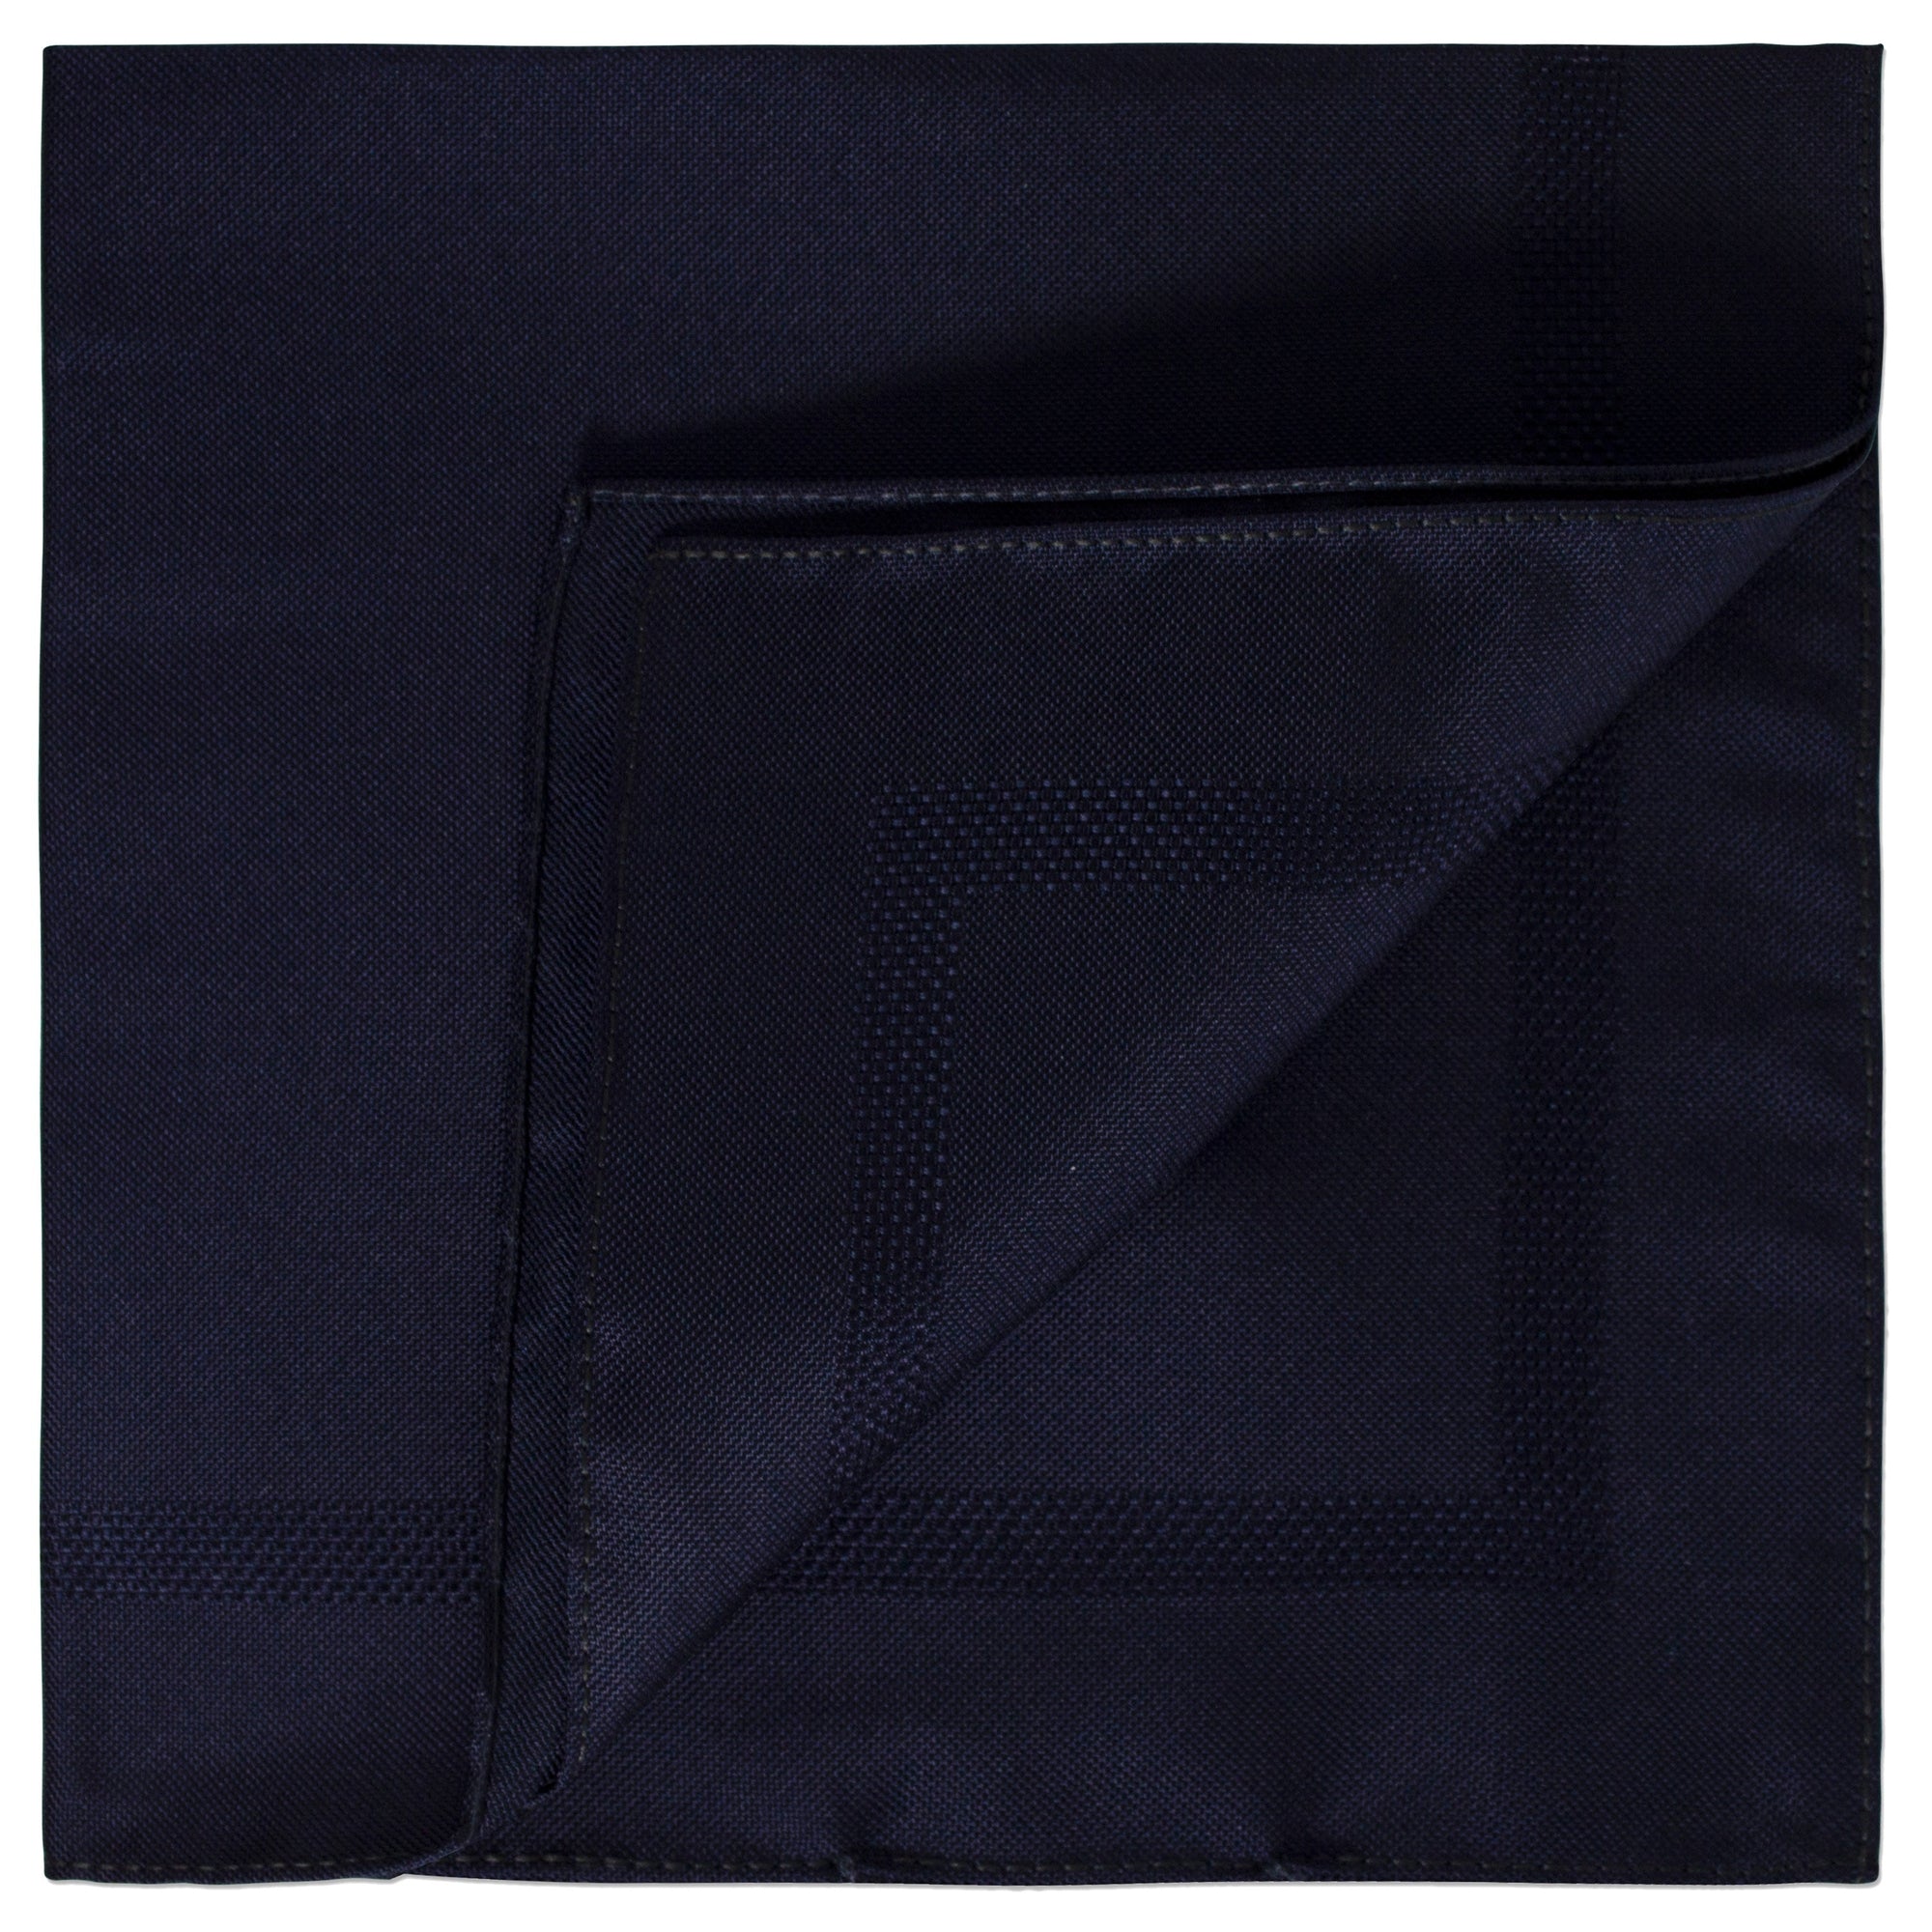 Ermenegildo Zegna Plain Silk Pocket Square with Woven Texture in Deep Navy-Pocket Squares-Ermenegildo Zegna-Cufflinks.com.sg